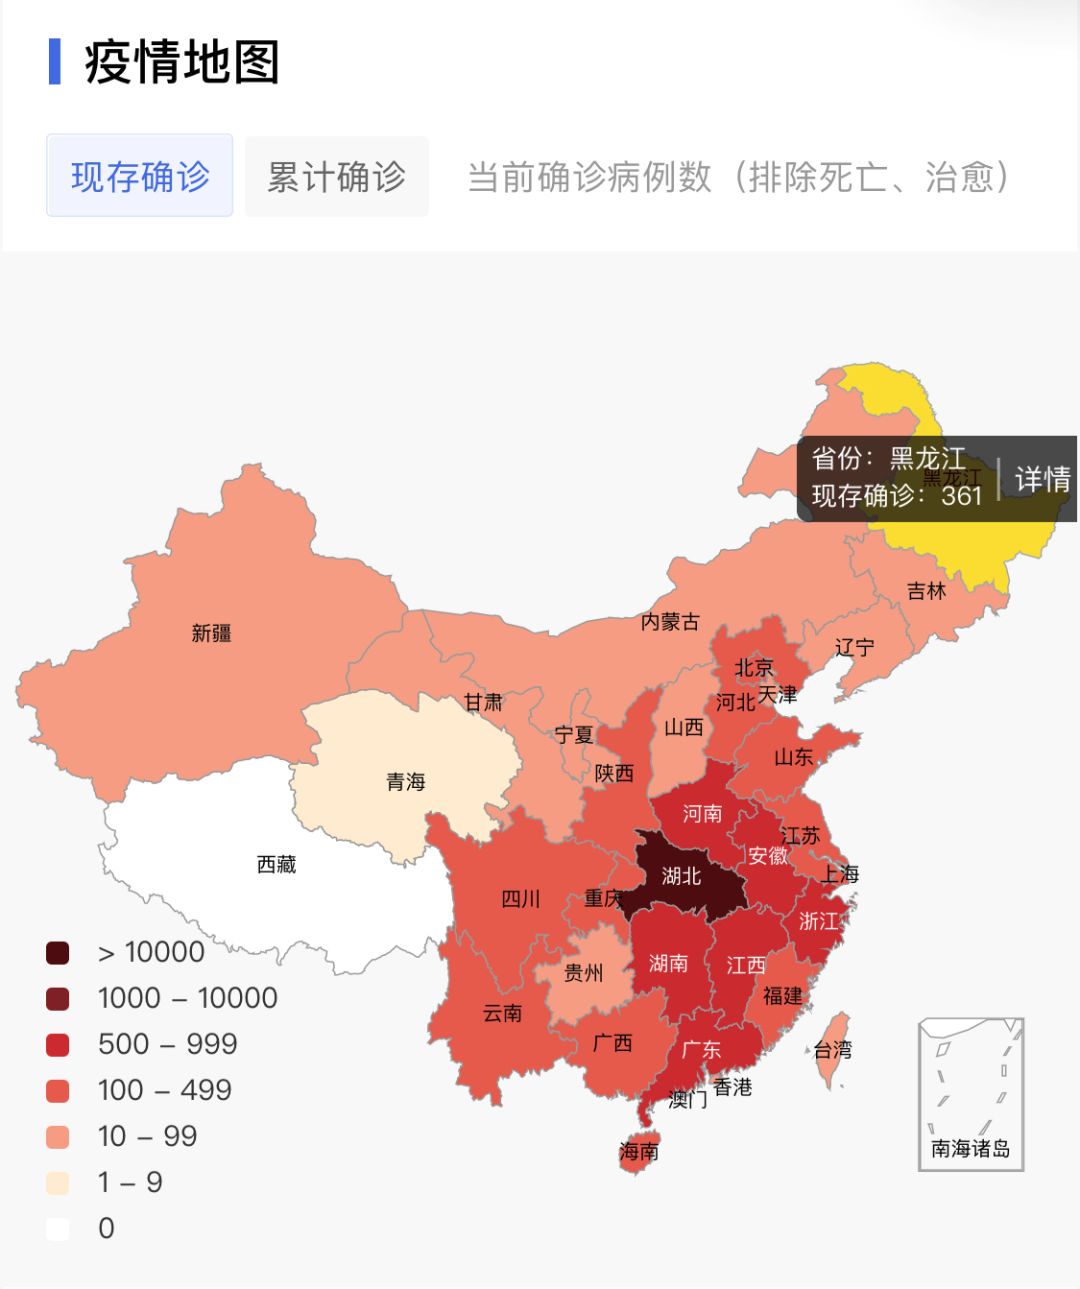 黑龙江疫区地图图片